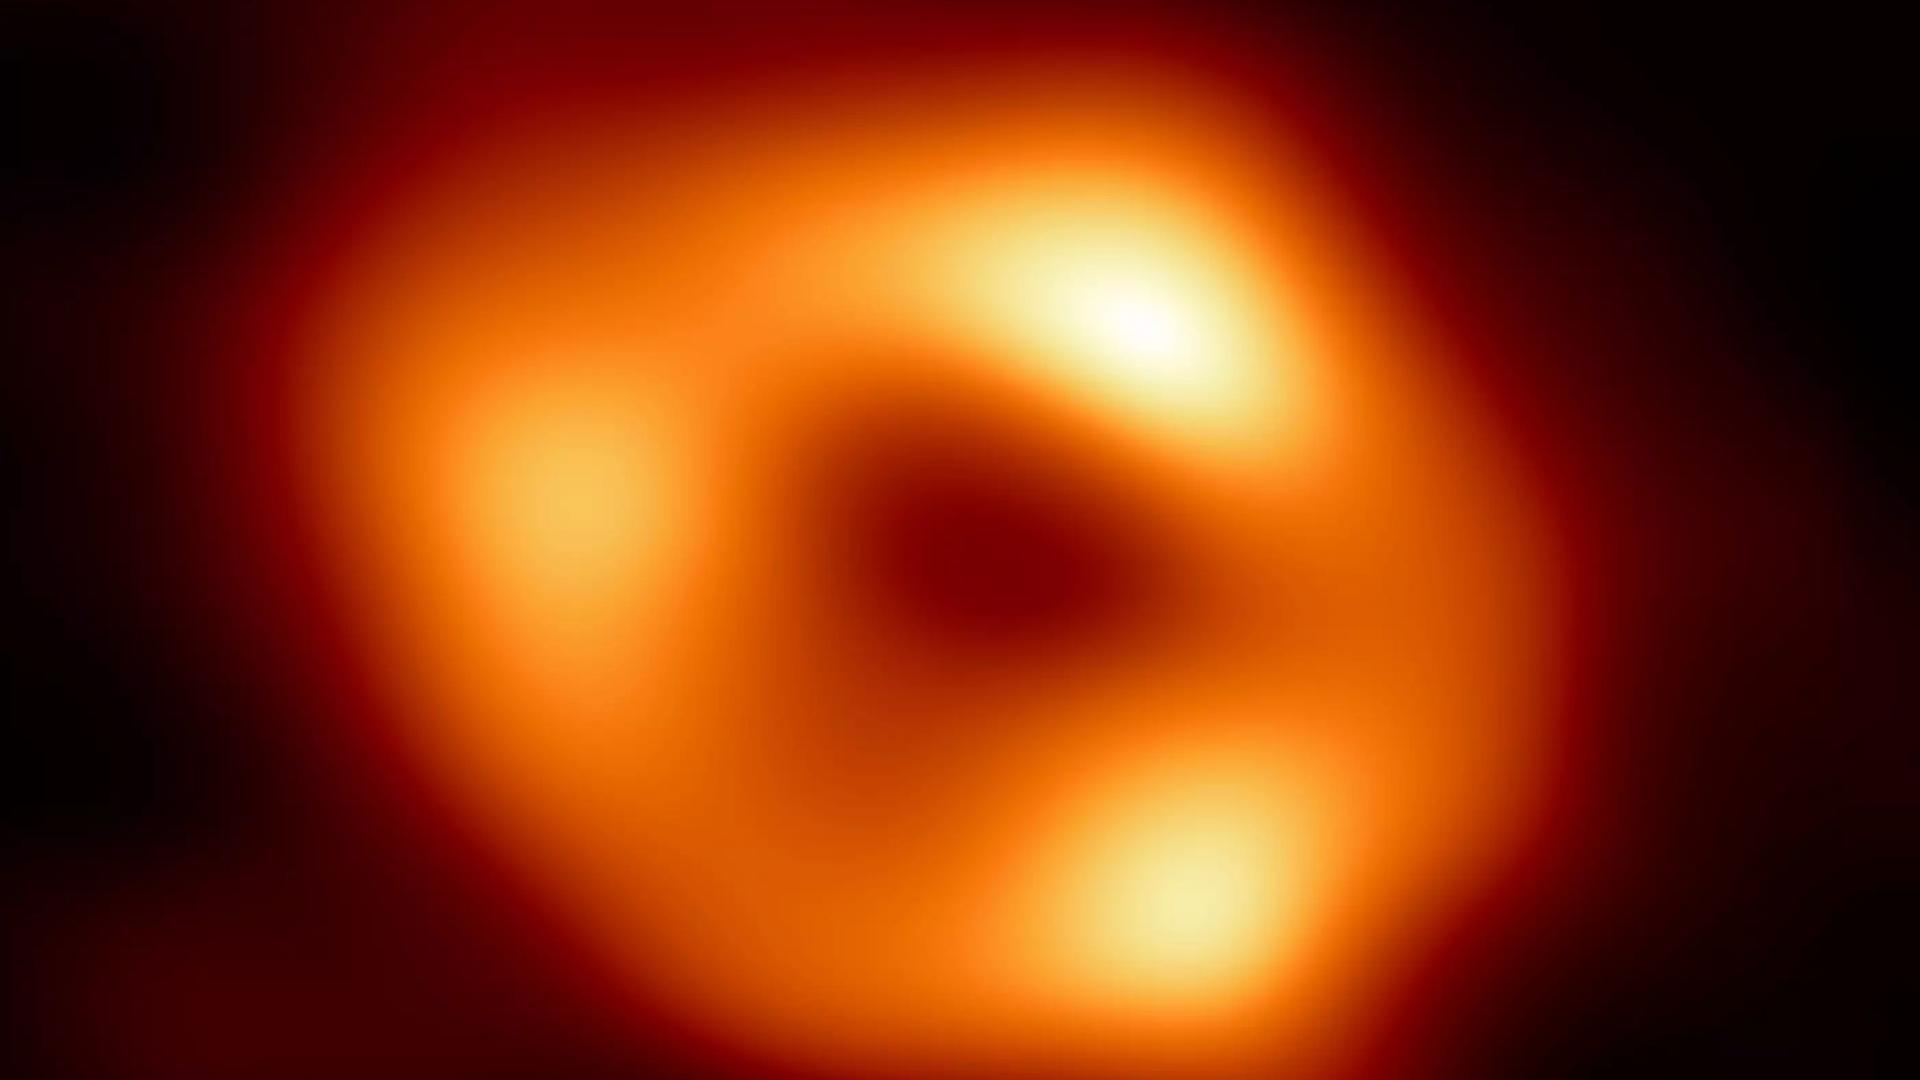 Das Schwarze Loch im Zentrum der Milchstraße hat mehr als 4 Millionen Sonnenmassen, aber nicht einmal 30 Millionen Kilometer Durchmesser